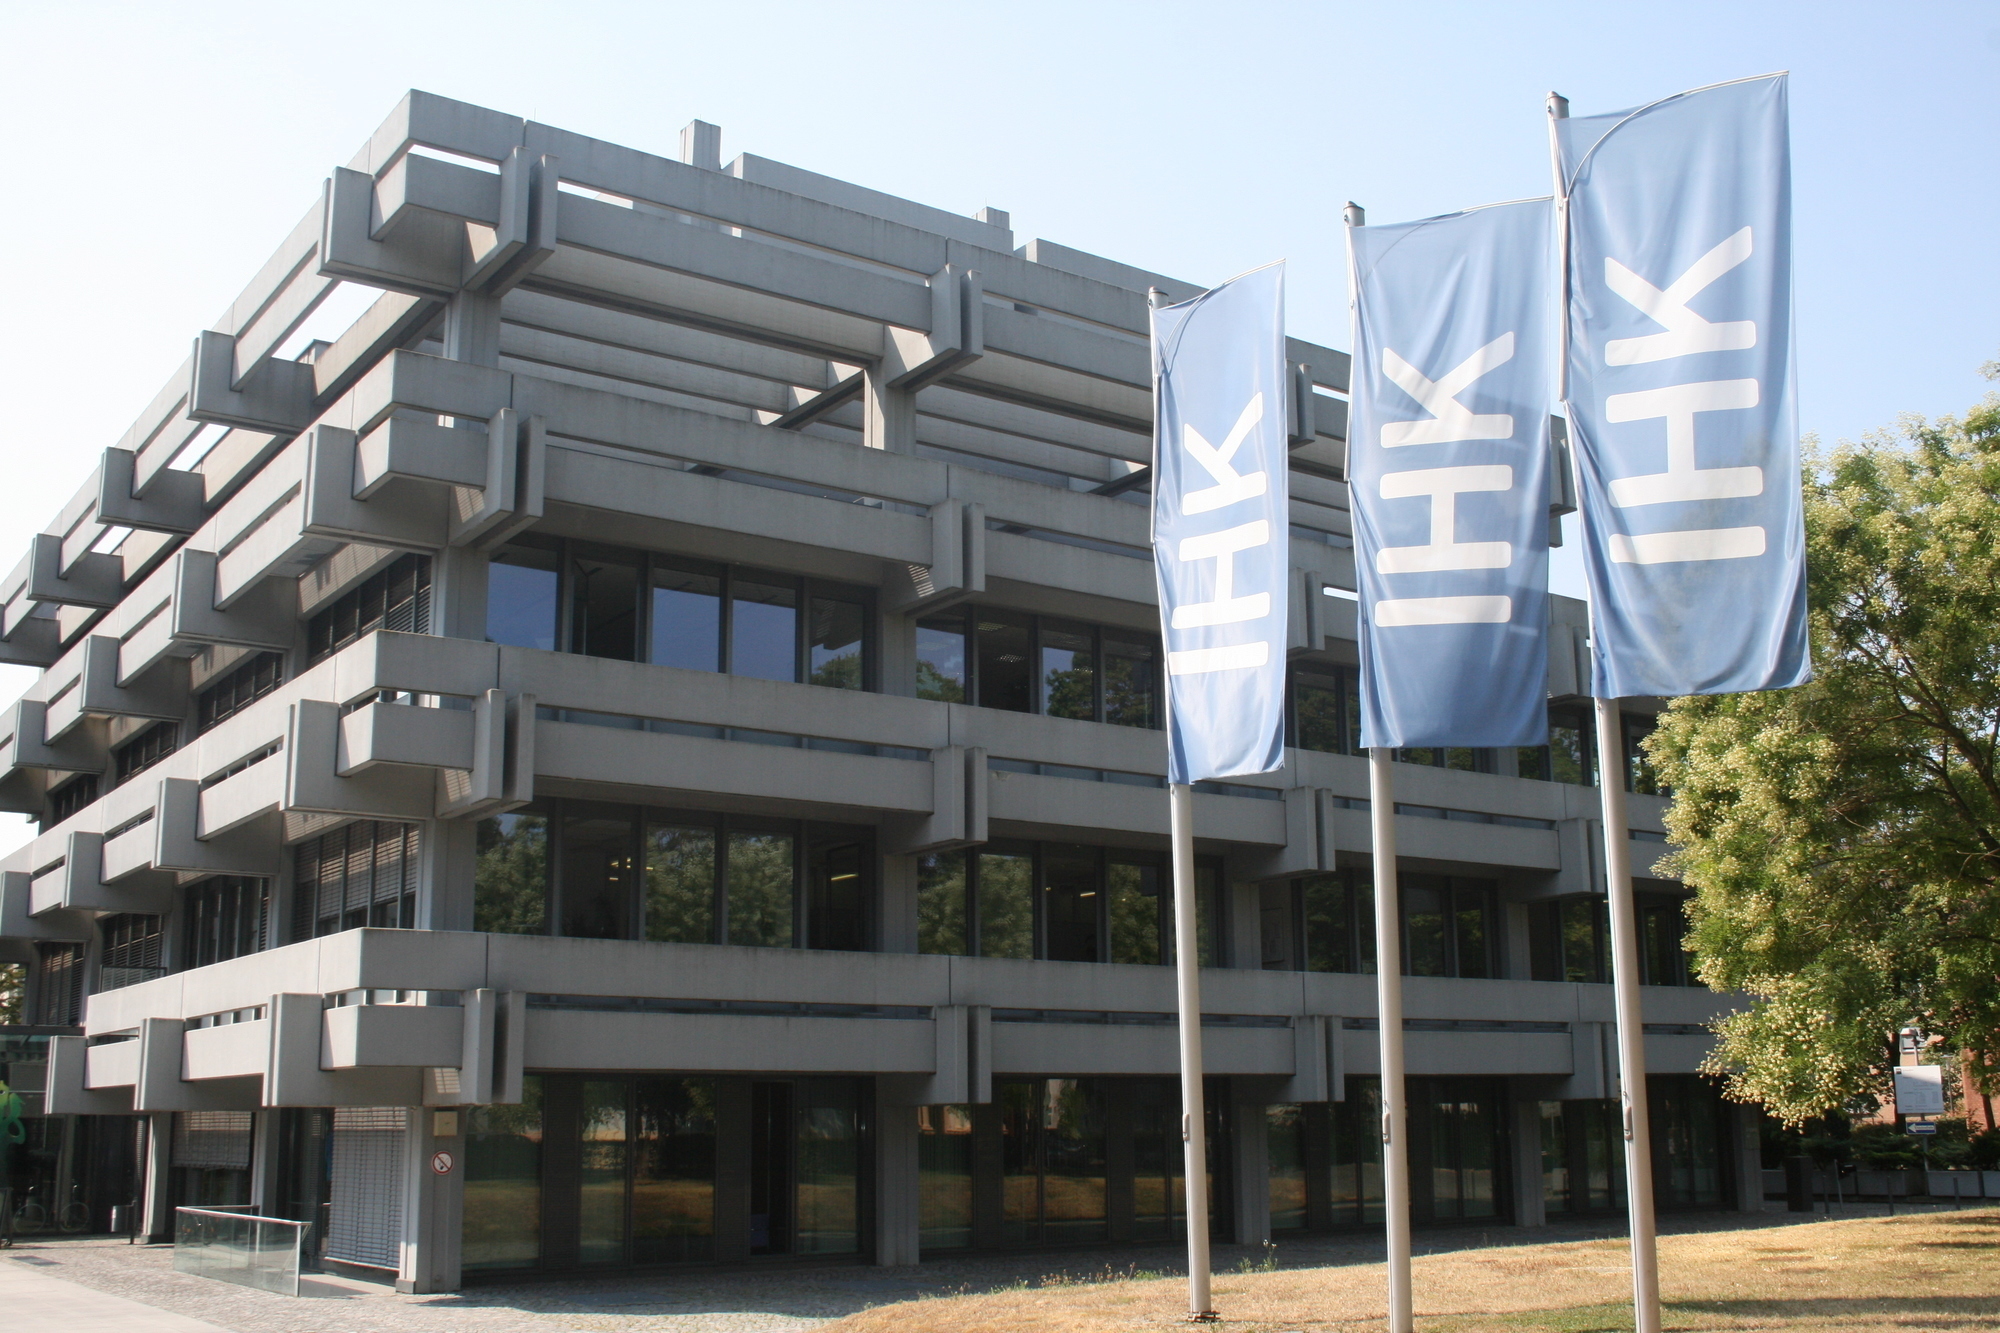 Archivbild. Das Firmengebäude der IHK Schwaben.